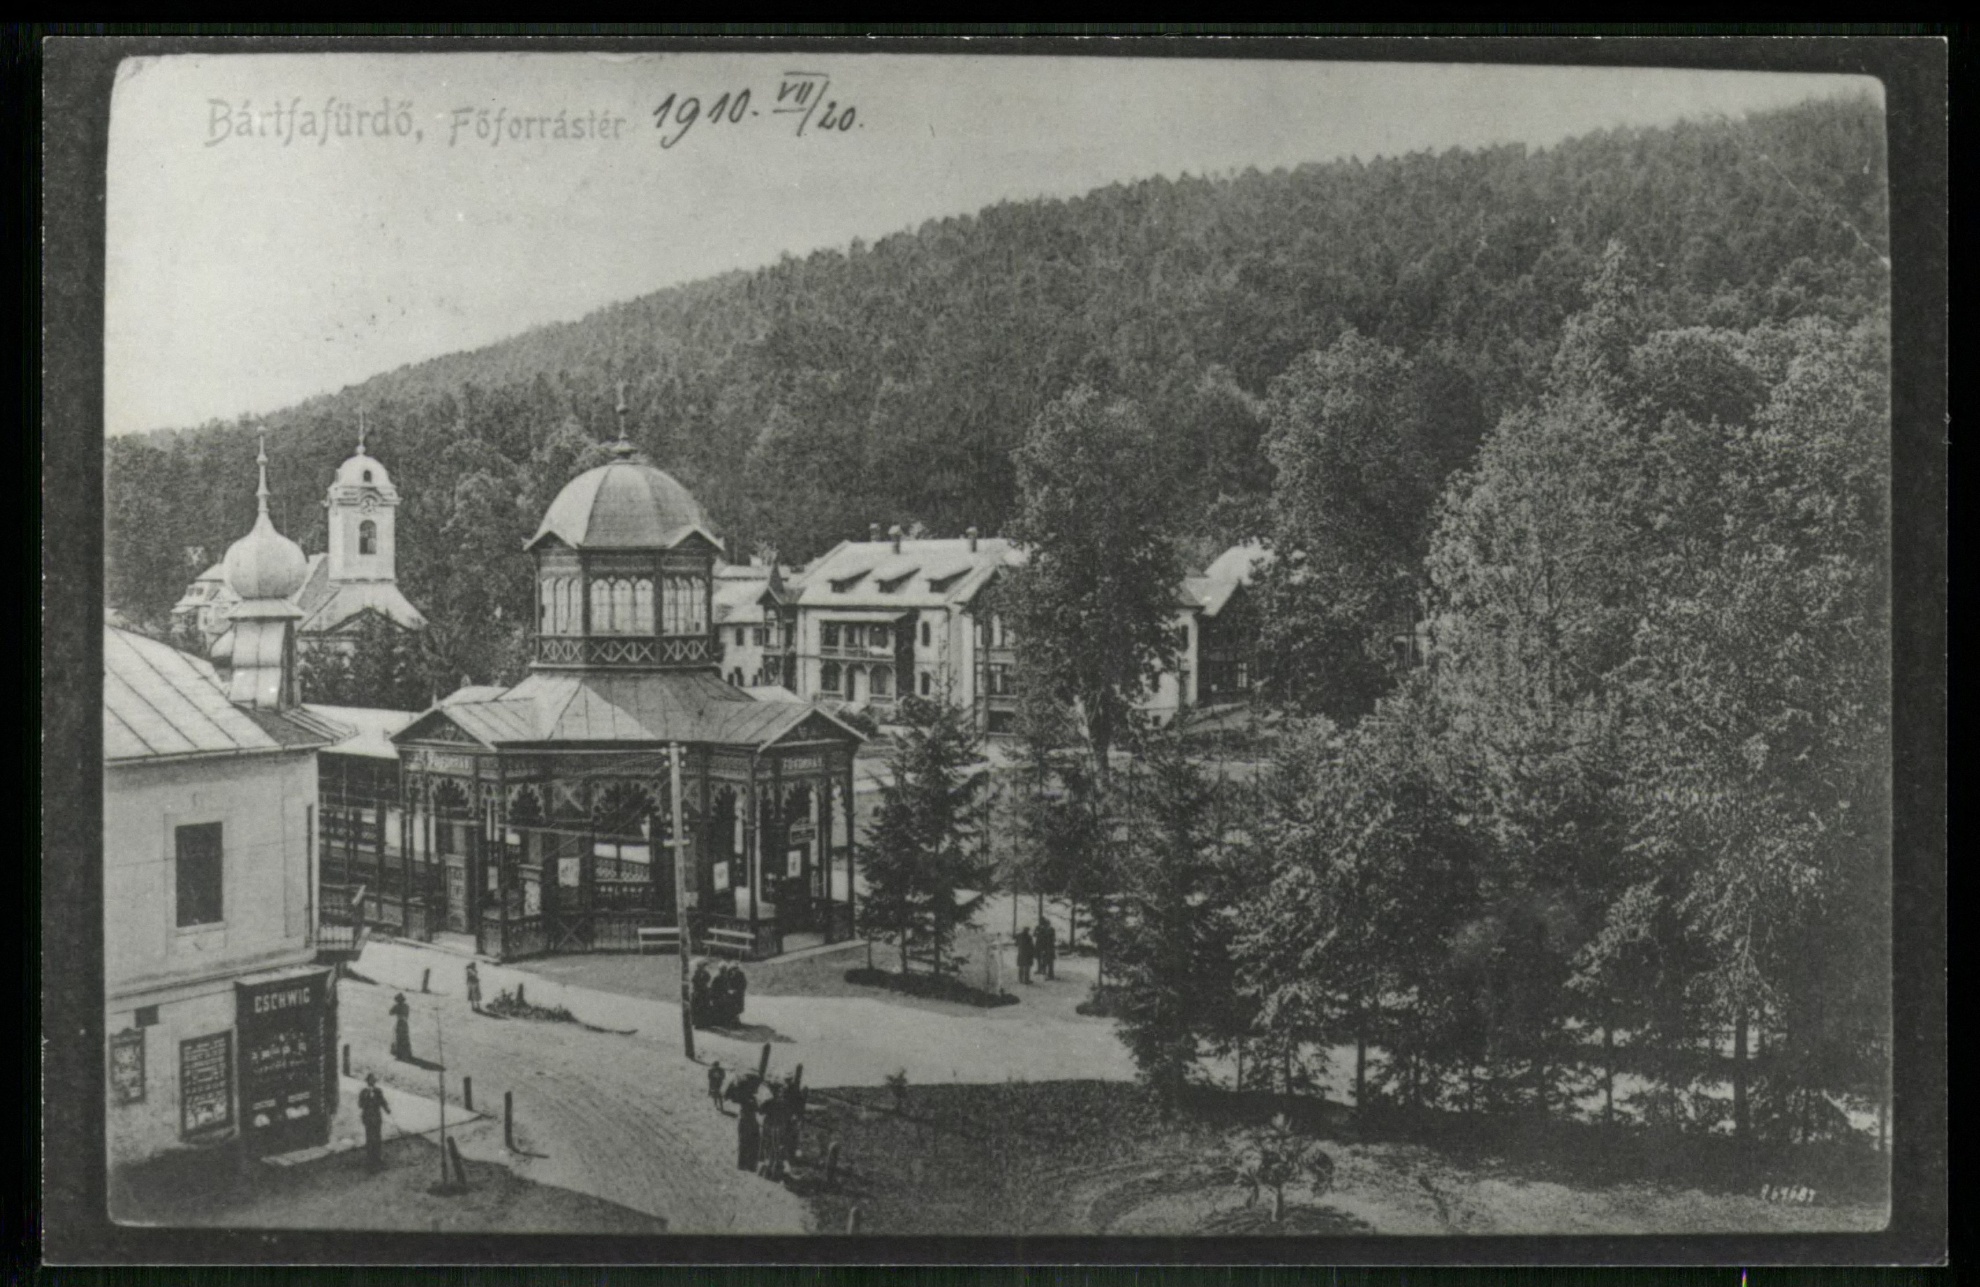 Bártfafürdő; Forrás tér (Magyar Kereskedelmi és Vendéglátóipari Múzeum CC BY-NC-ND)